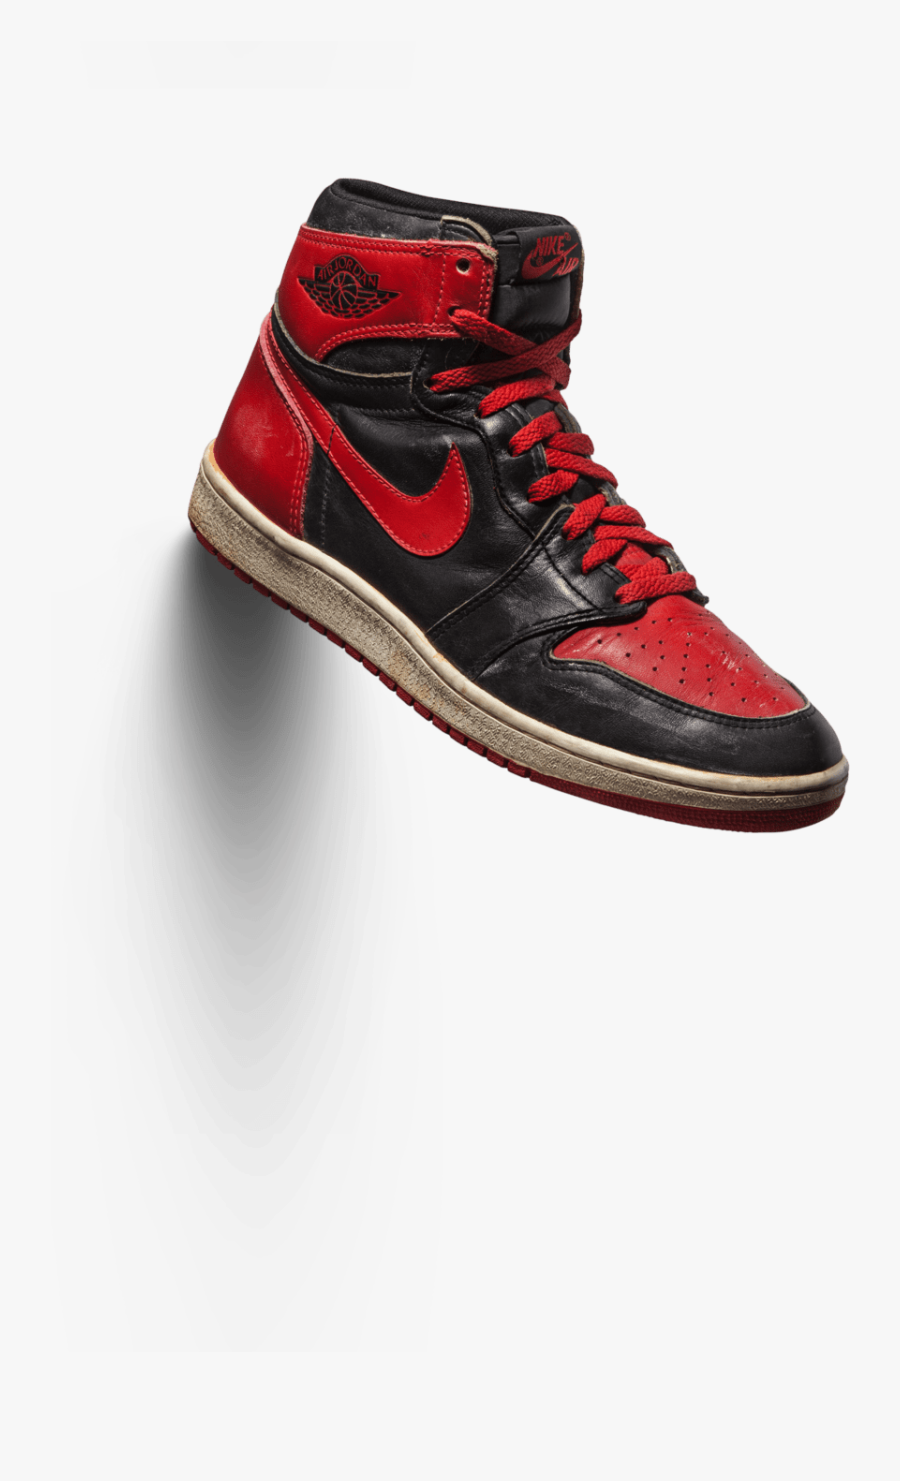 Skate-shoe - Air Jordan Png, Transparent Clipart